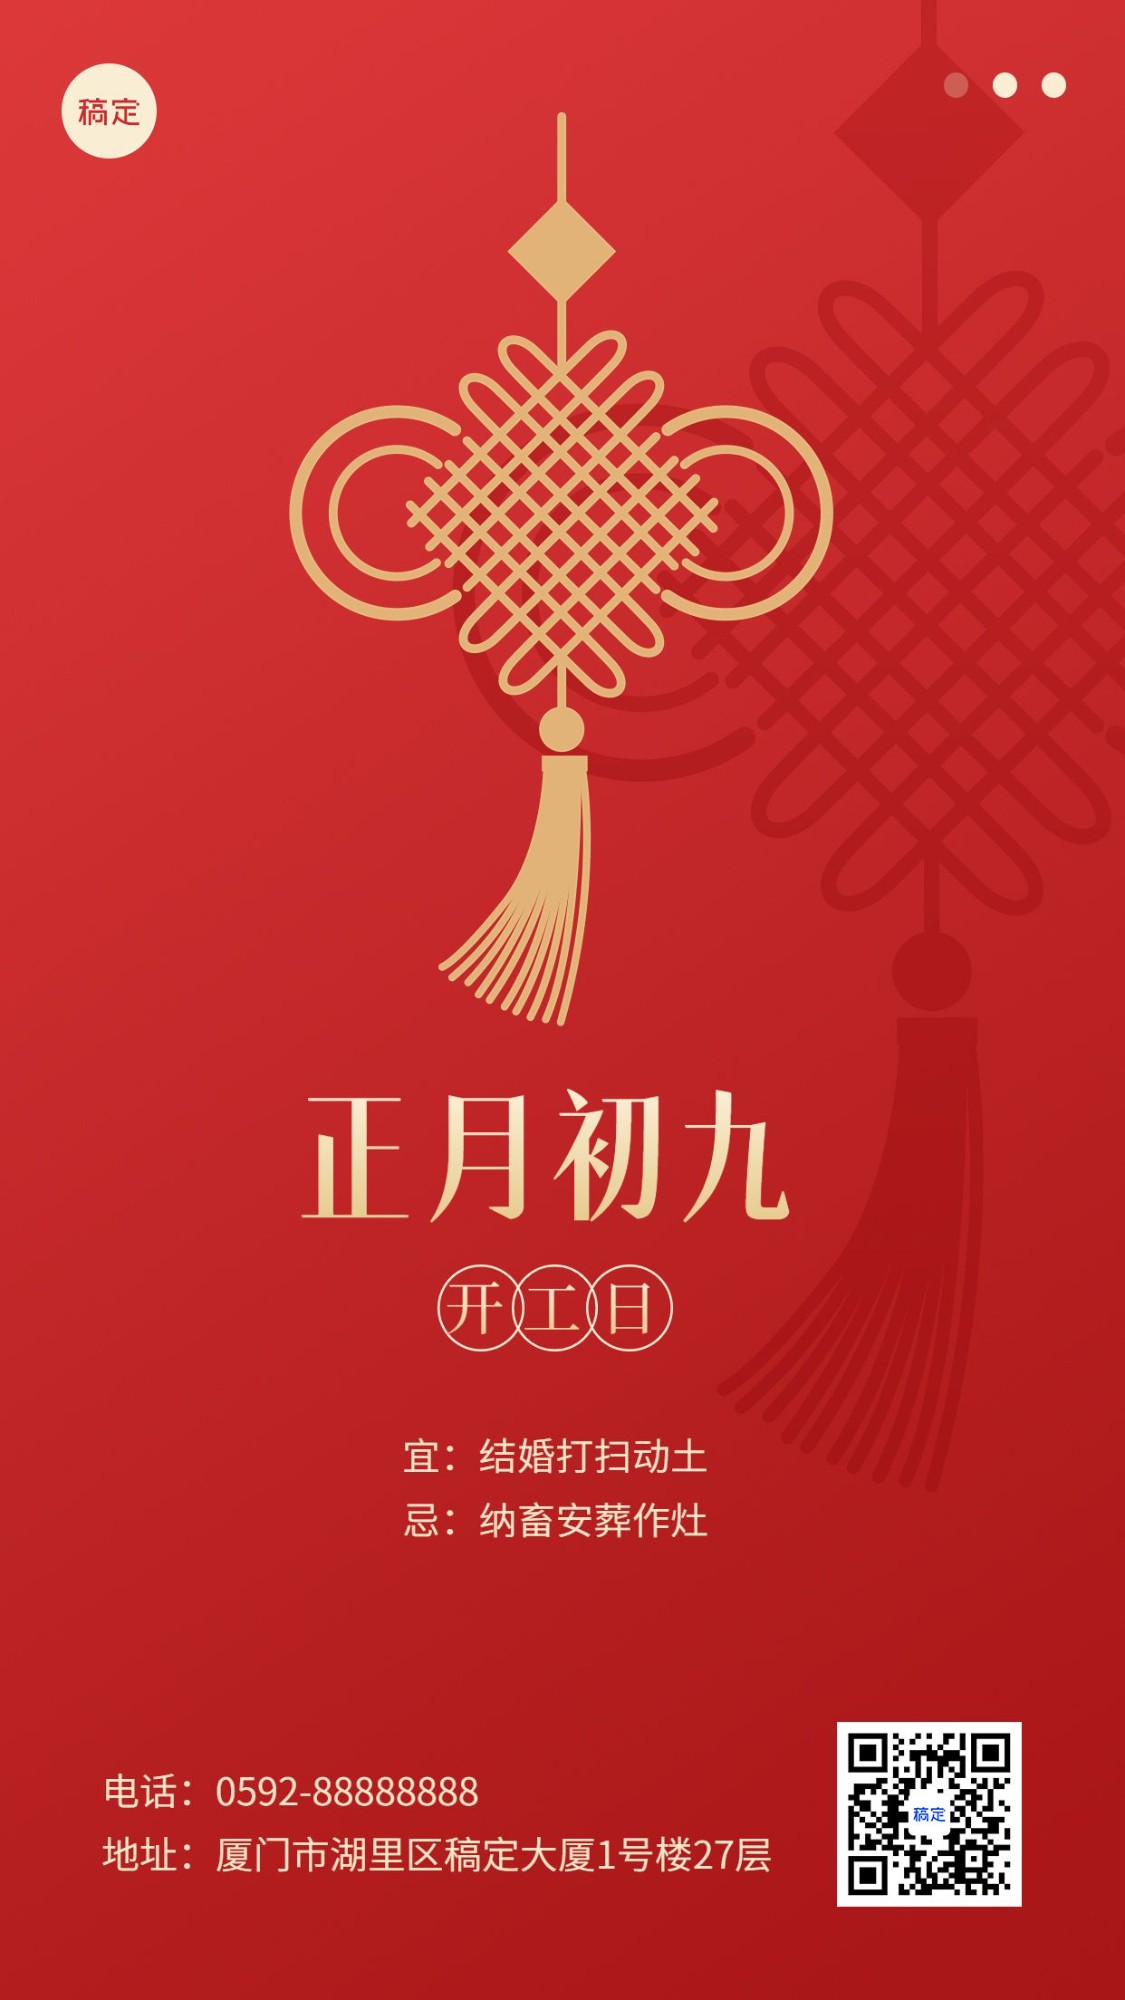 春节新年祝福正月初九简约排版套系手机海报